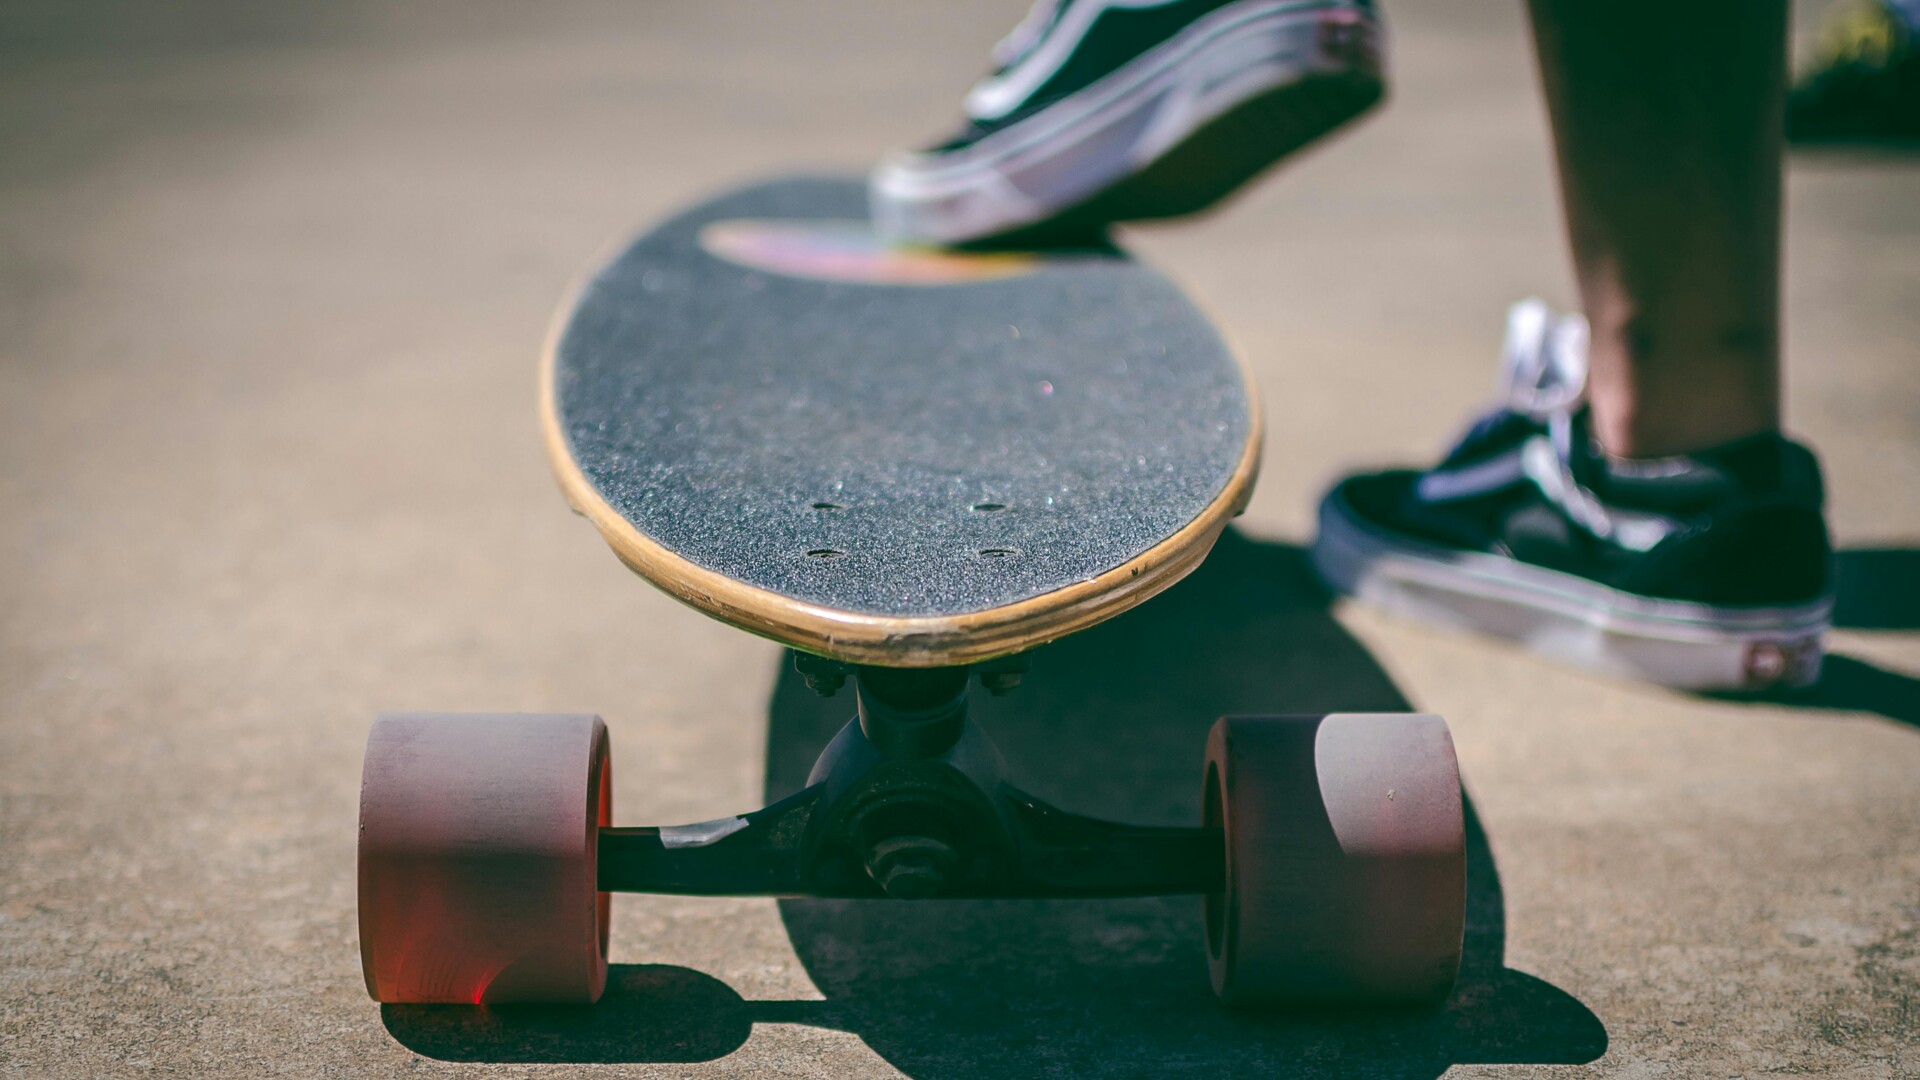 Skatepark in a Box: Skateausrüstung ausleihen